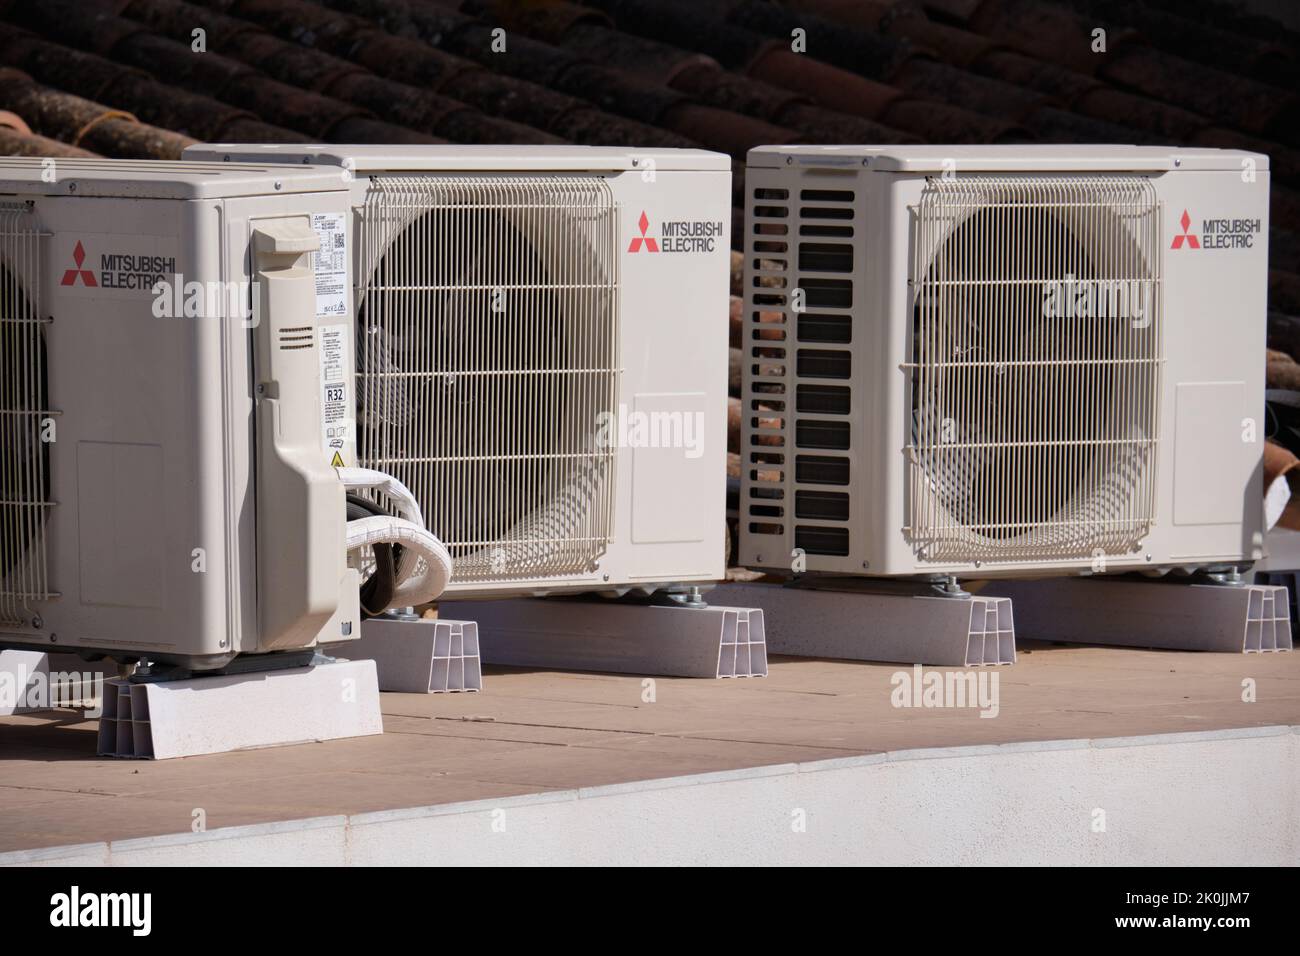 Mitsubishi unità elettriche di aria condizionata sul tetto di una casa. Provincia di Malaga, Spagna Foto Stock